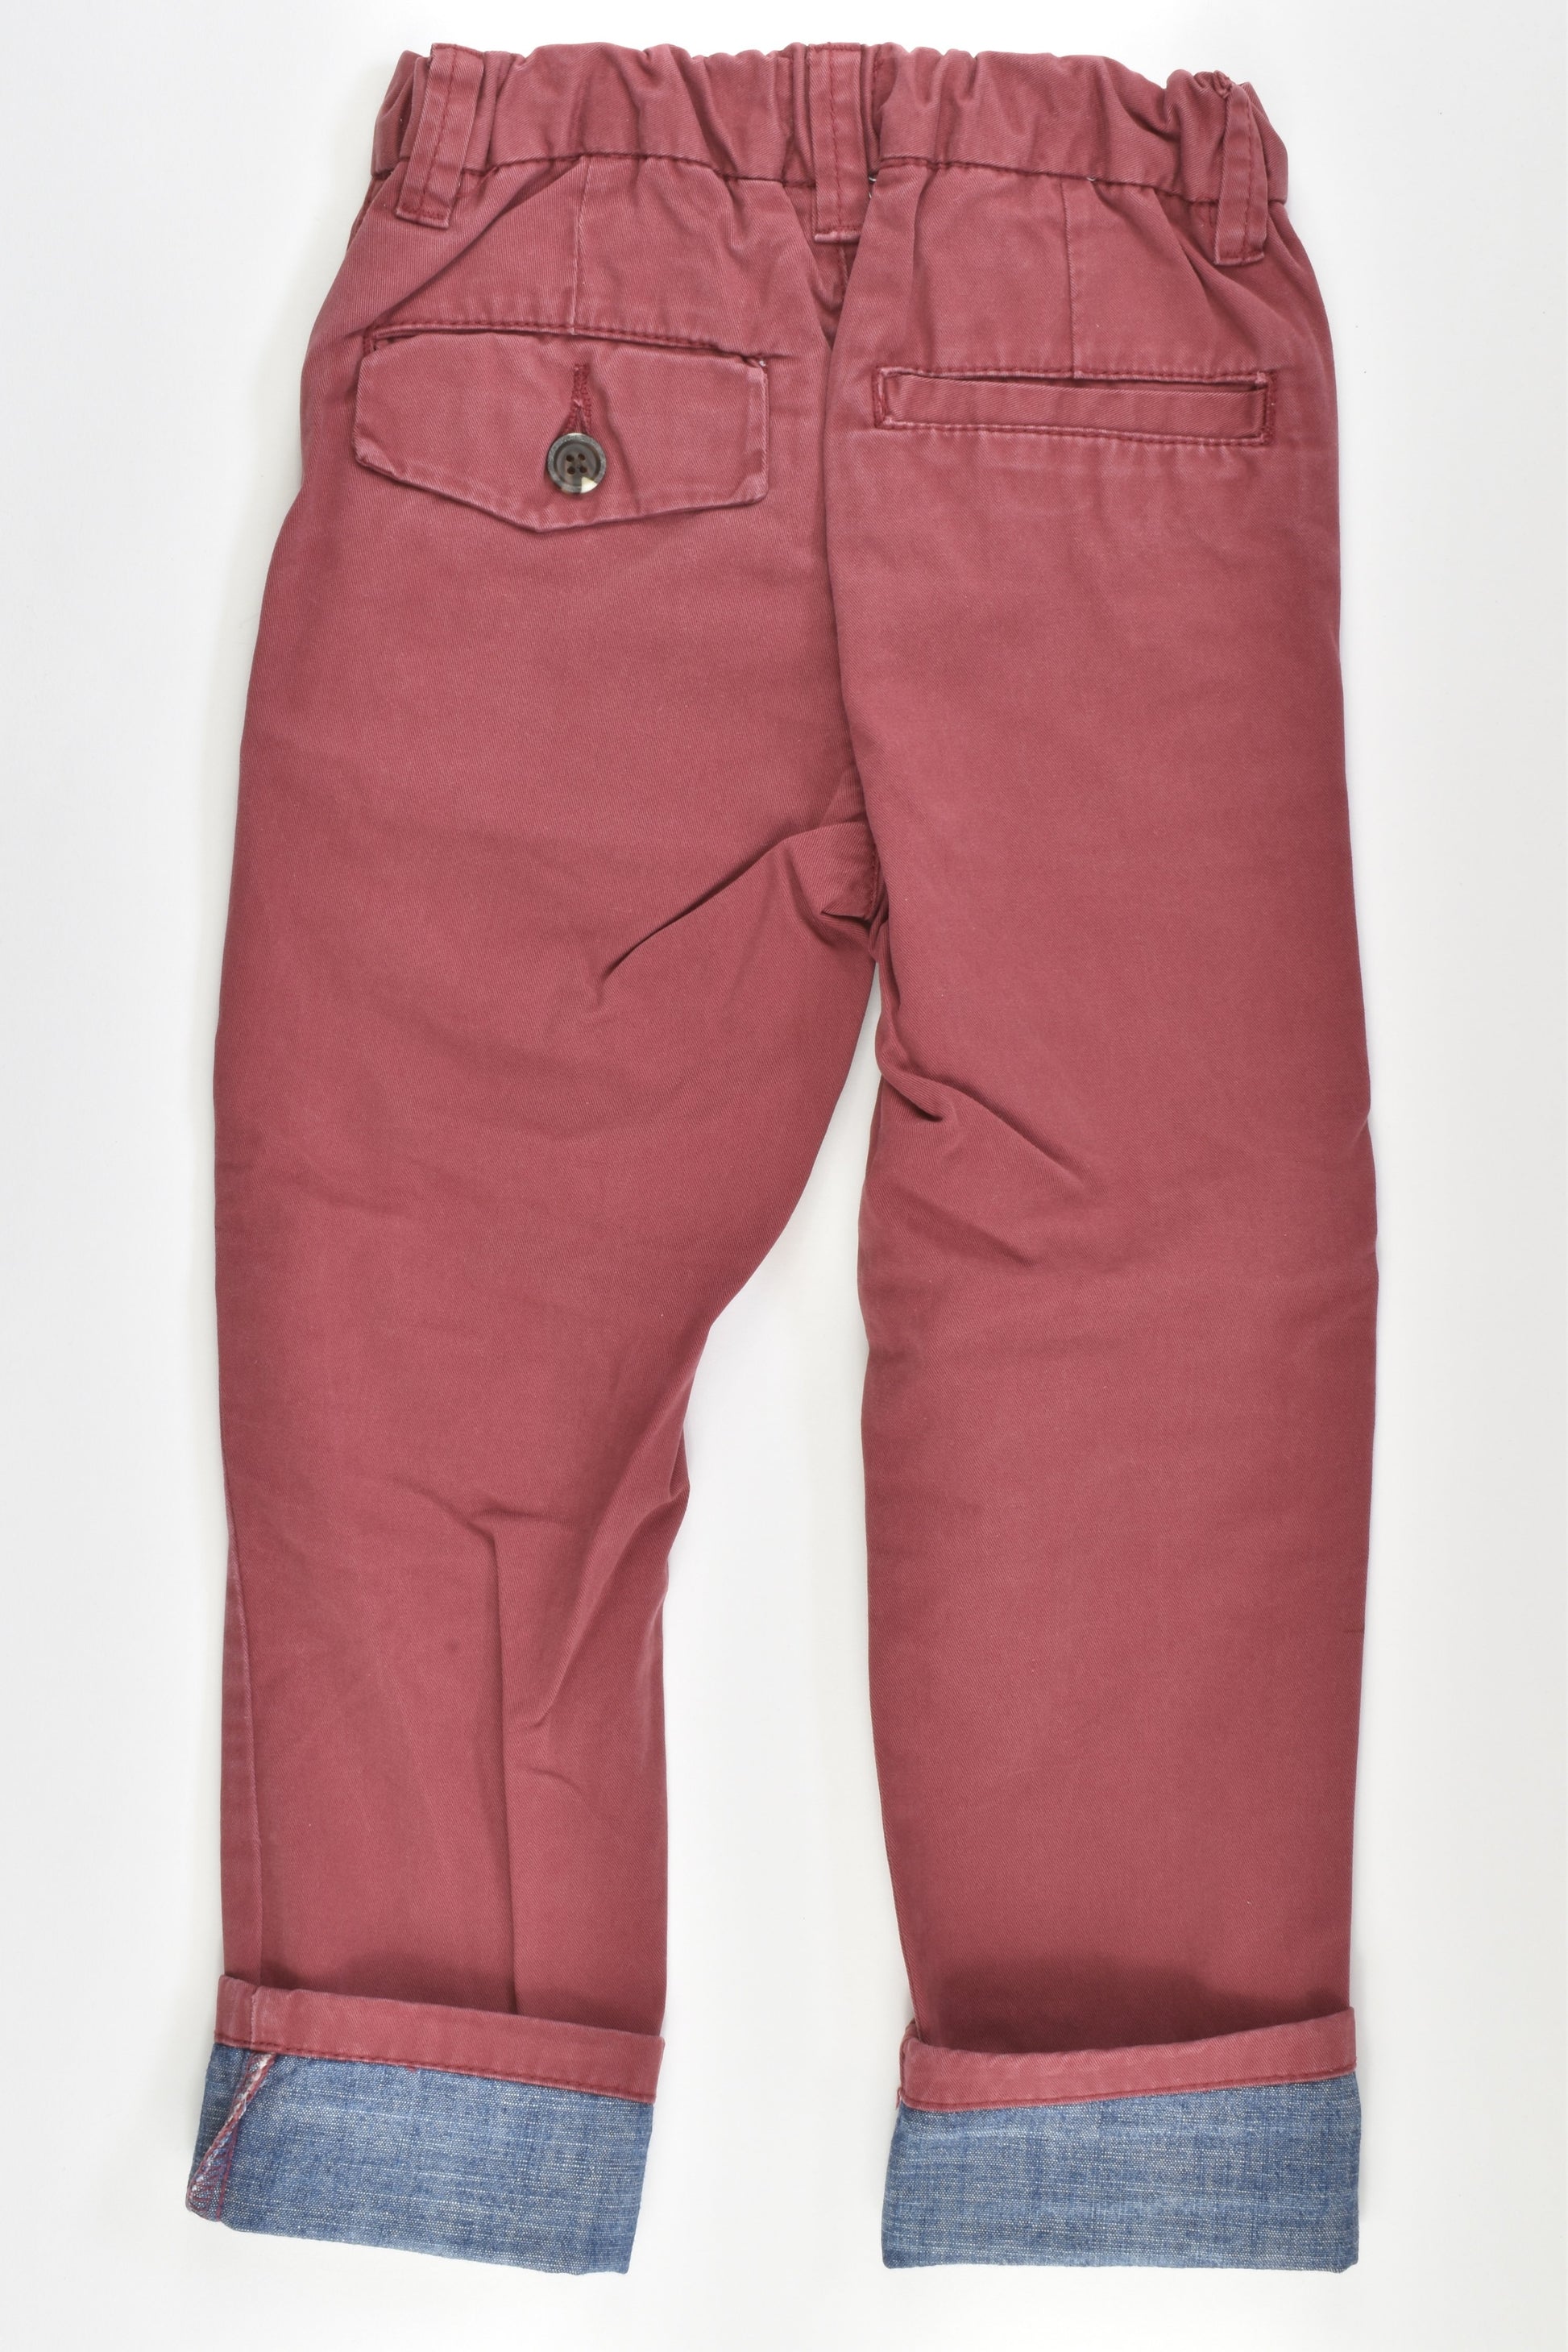 Next Size 2-3 (98 cm) Pants